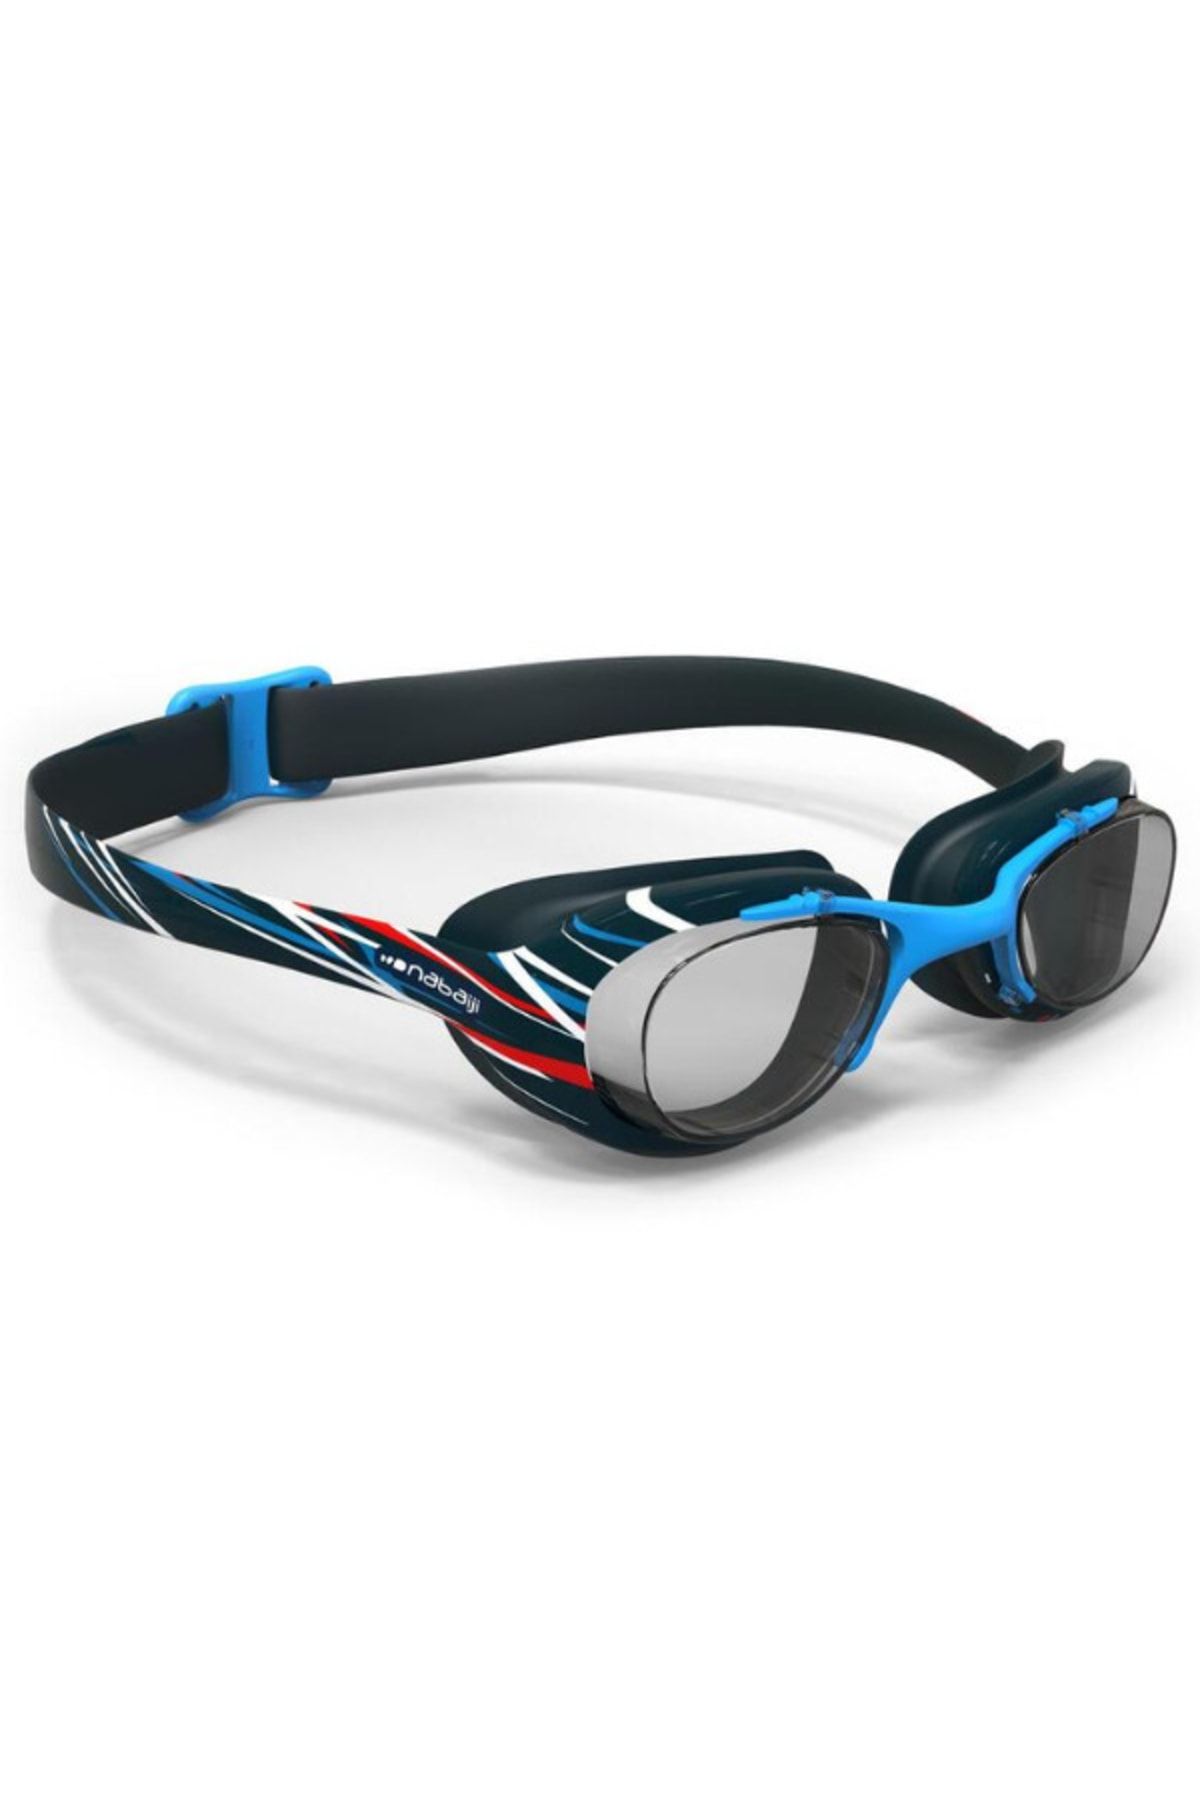 Decathlon - Yüzücü Gözlüğü L Boy Mavi Mika Baskılı 100 Xbase